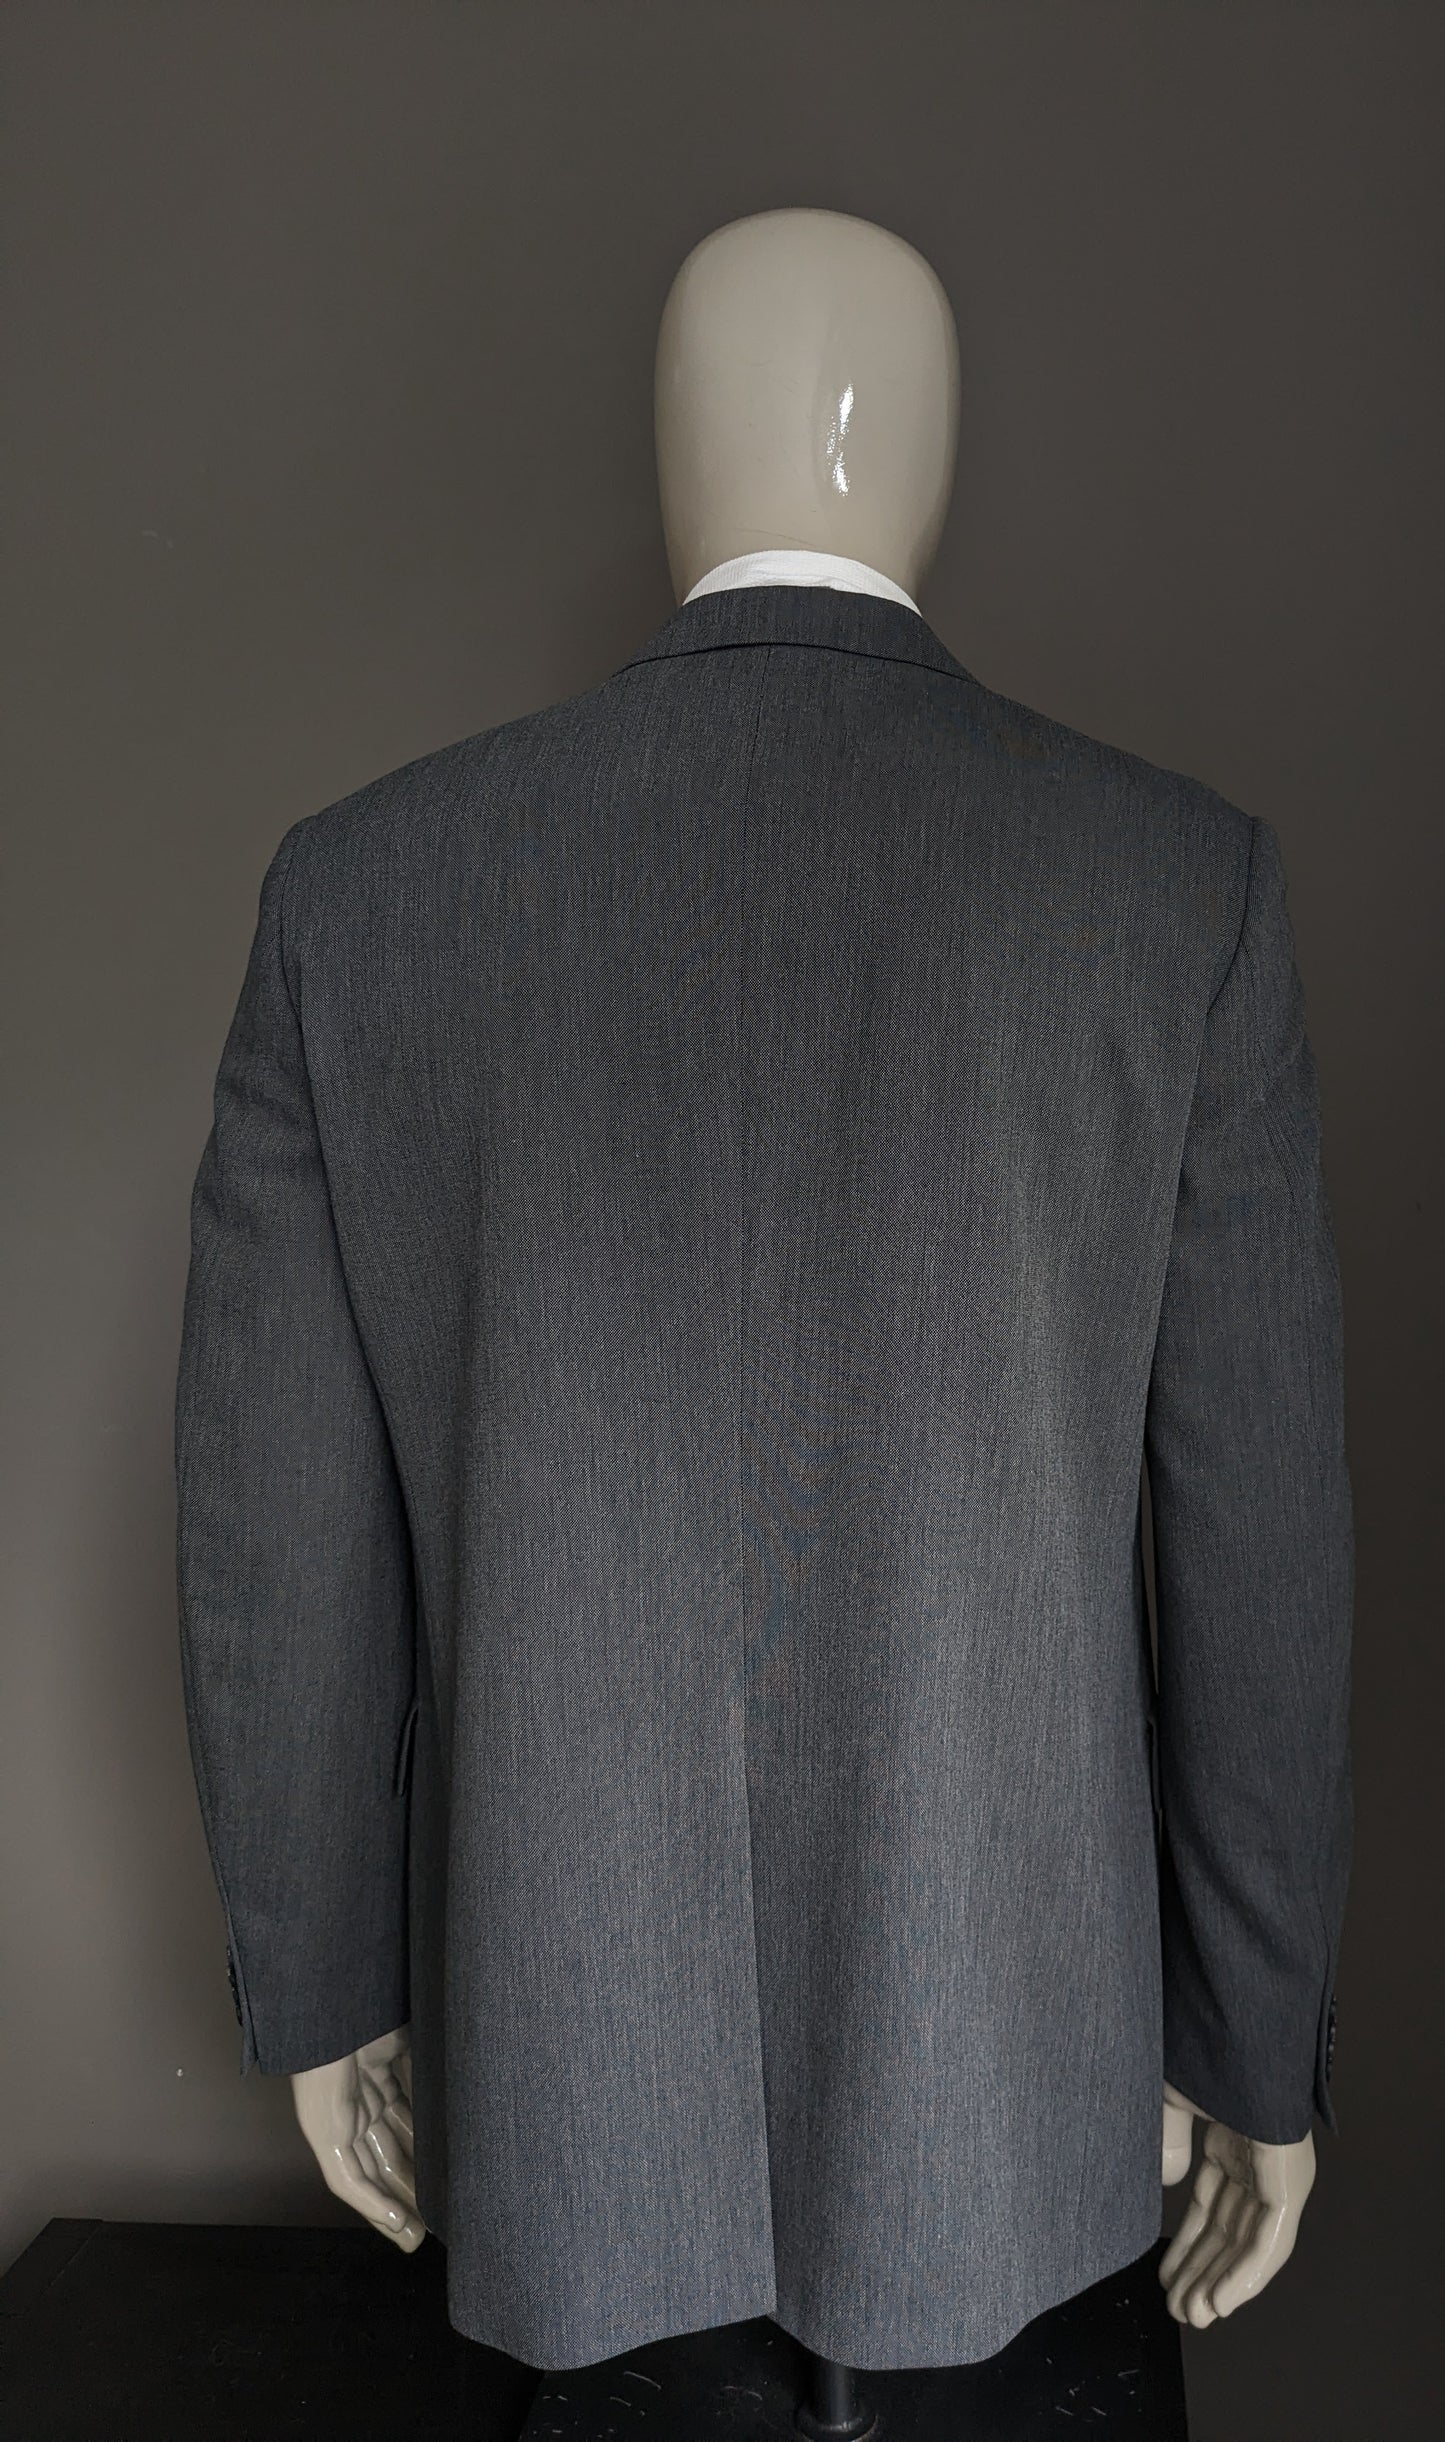 Mexx jacket. Gray mixed. Size 52 / L.